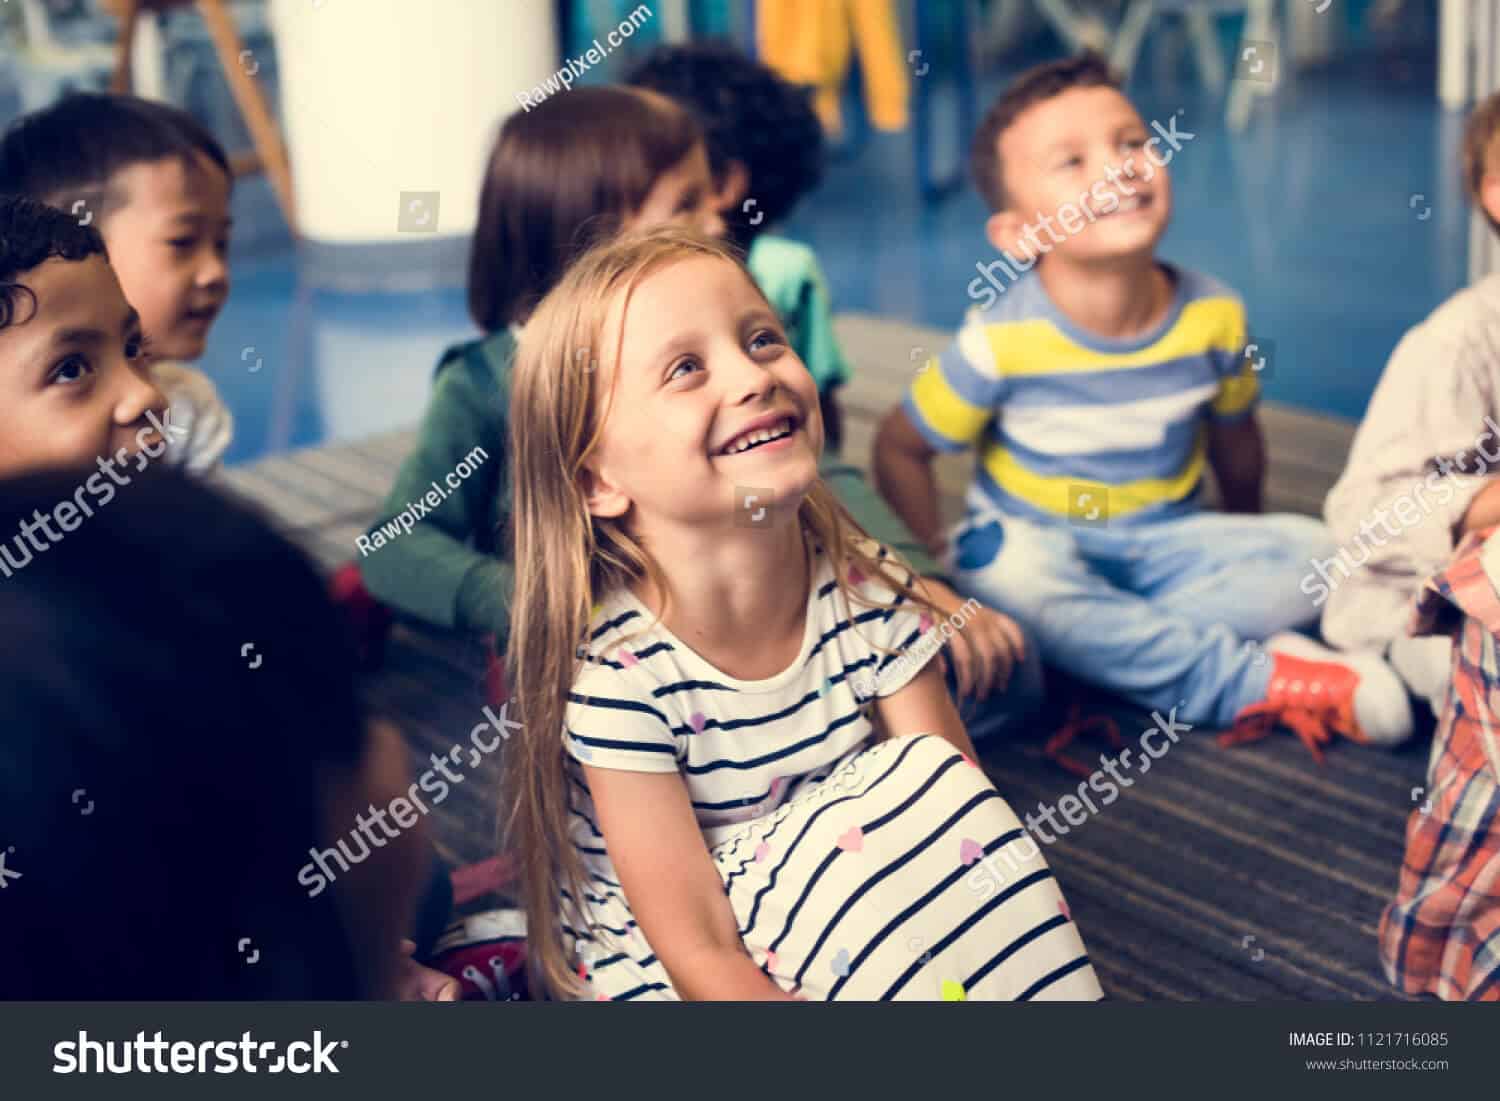 250 ngàn hình ảnh trẻ em Châu Âu chất lượng cao trên Shutterstock